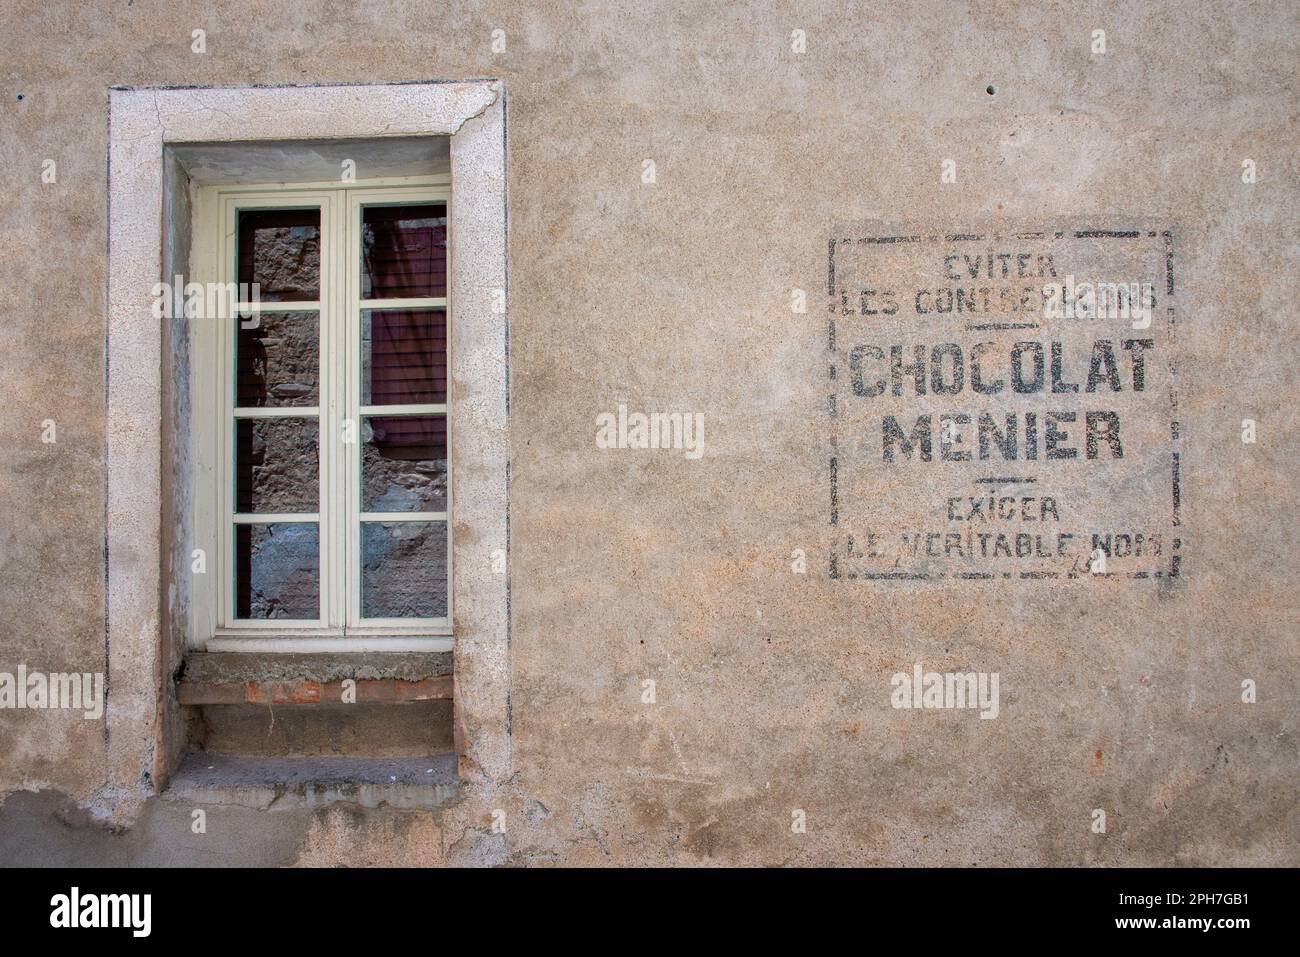 Chocolat Menier: Un segno sbiadito di una marca dimenticata di dolci su una facciata nel vecchio villaggio Roquebrun nella valle del fiume Orb del sud della Francia. Foto Stock